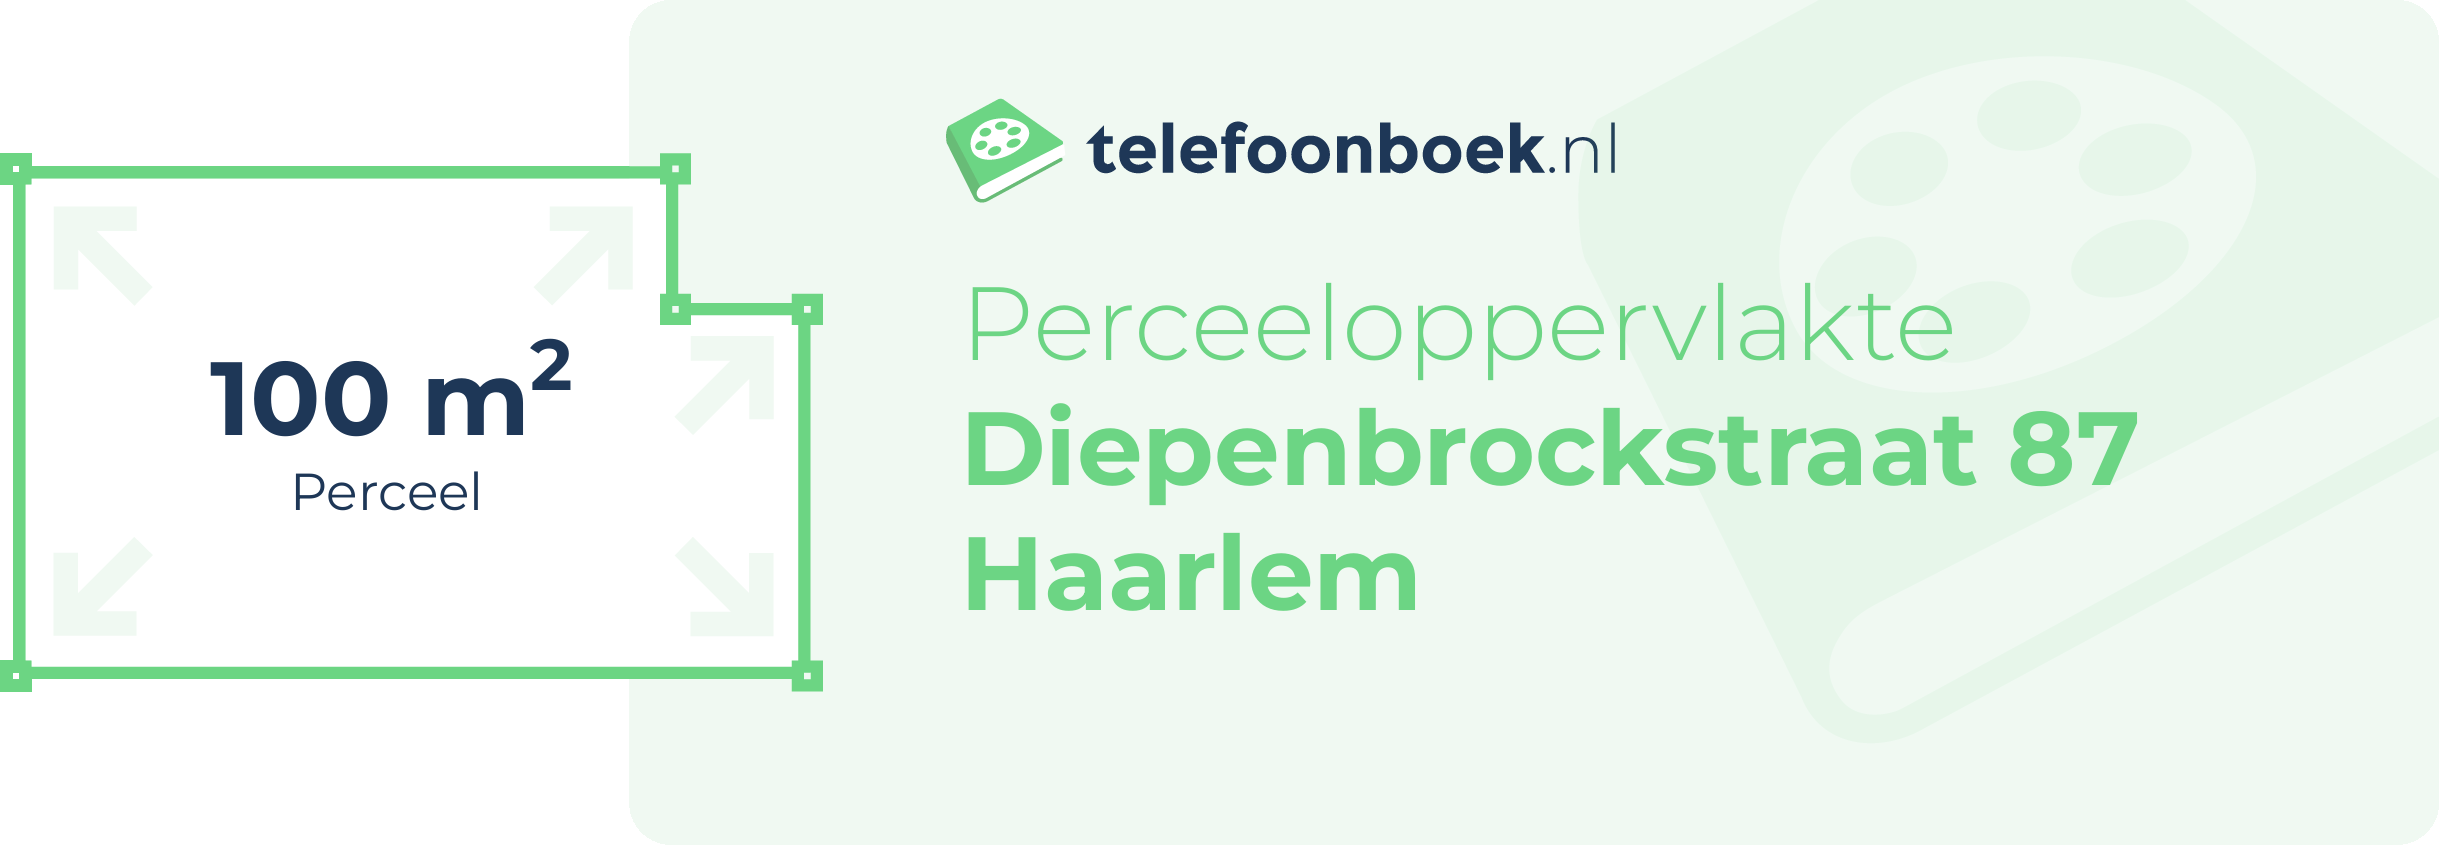 Perceeloppervlakte Diepenbrockstraat 87 Haarlem